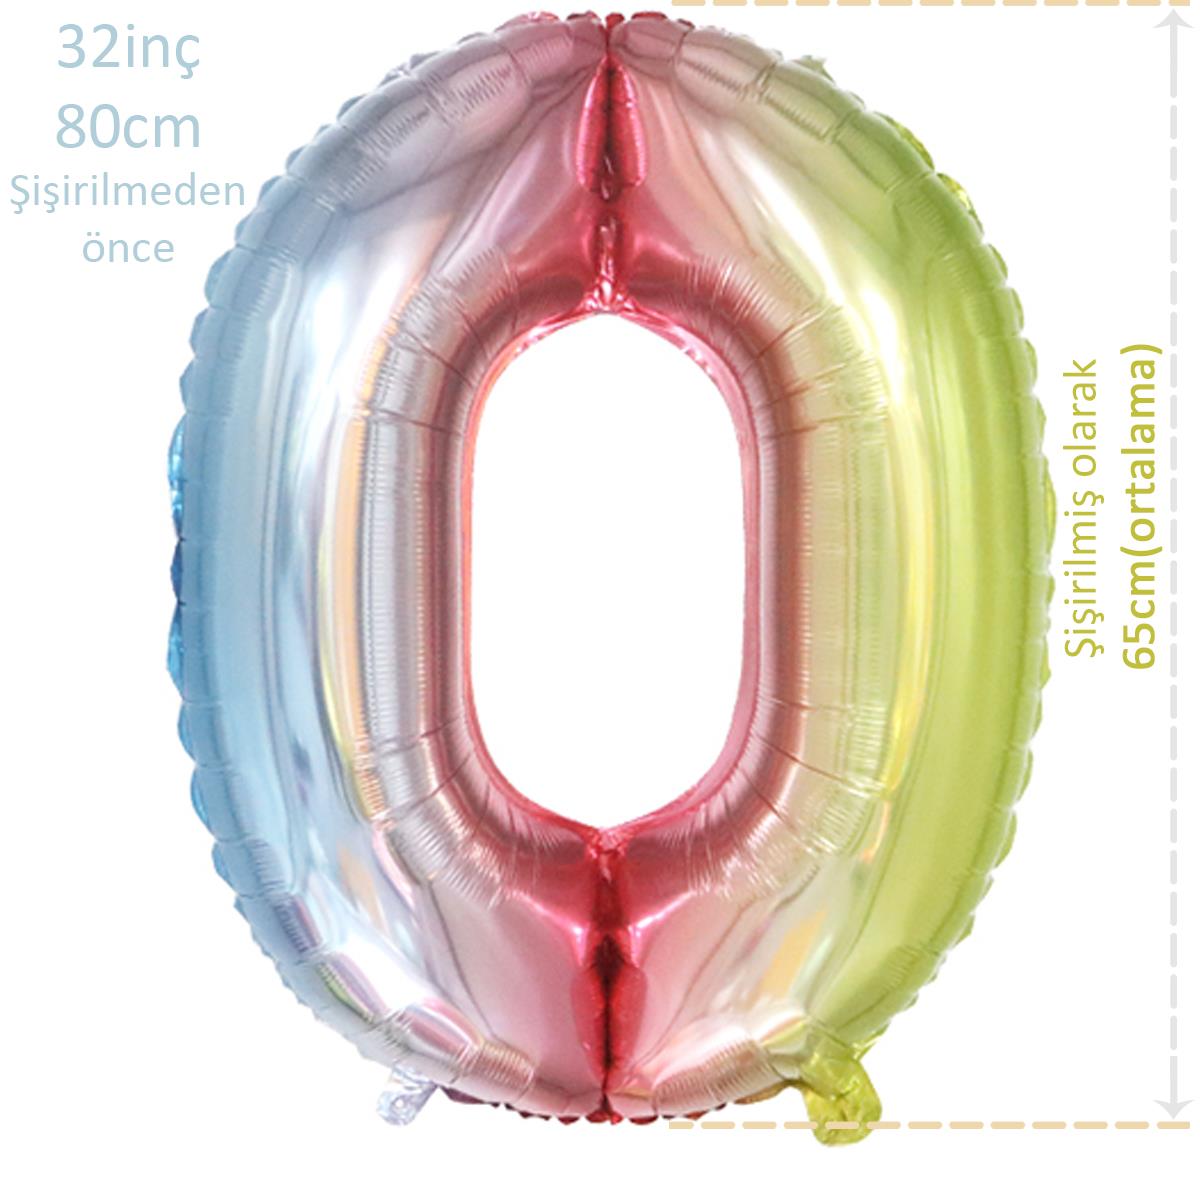 Rakam Folyo Balon Rainbow Gökkuşağı 0 Rakamı 32inç 80cm